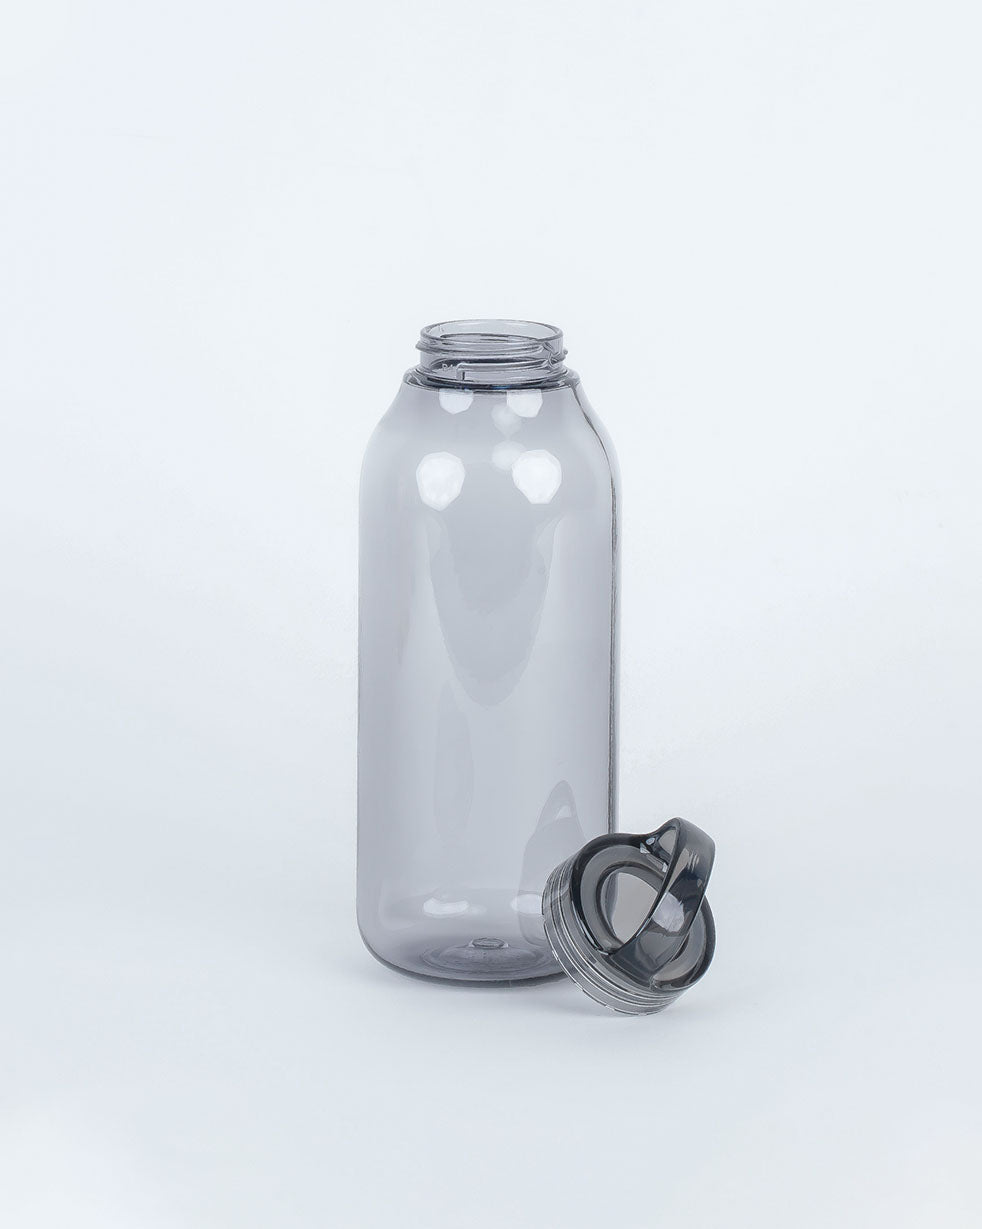 CAFÉ KITSUNÉ + Kinto Logo-Print Water Bottle, 500ml for Men